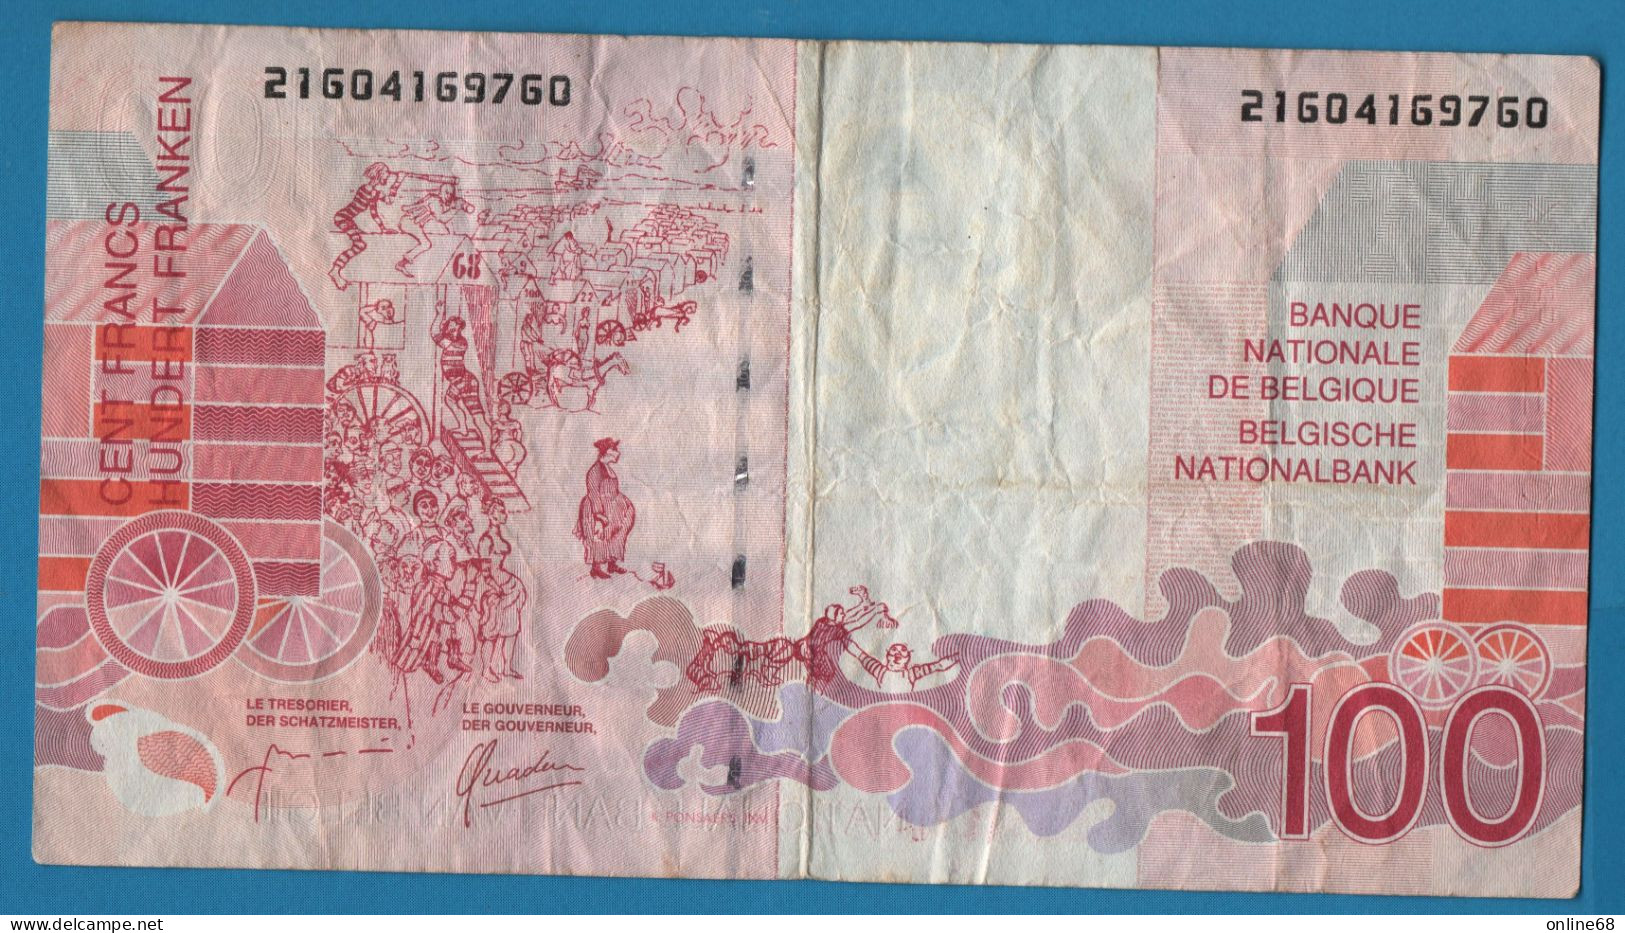 BELGIQUE 100 FRANCS ND (1995-2001) # 21604169760 P# 147 James Ensor Signatures: Masai & Quaden - 100 Francs